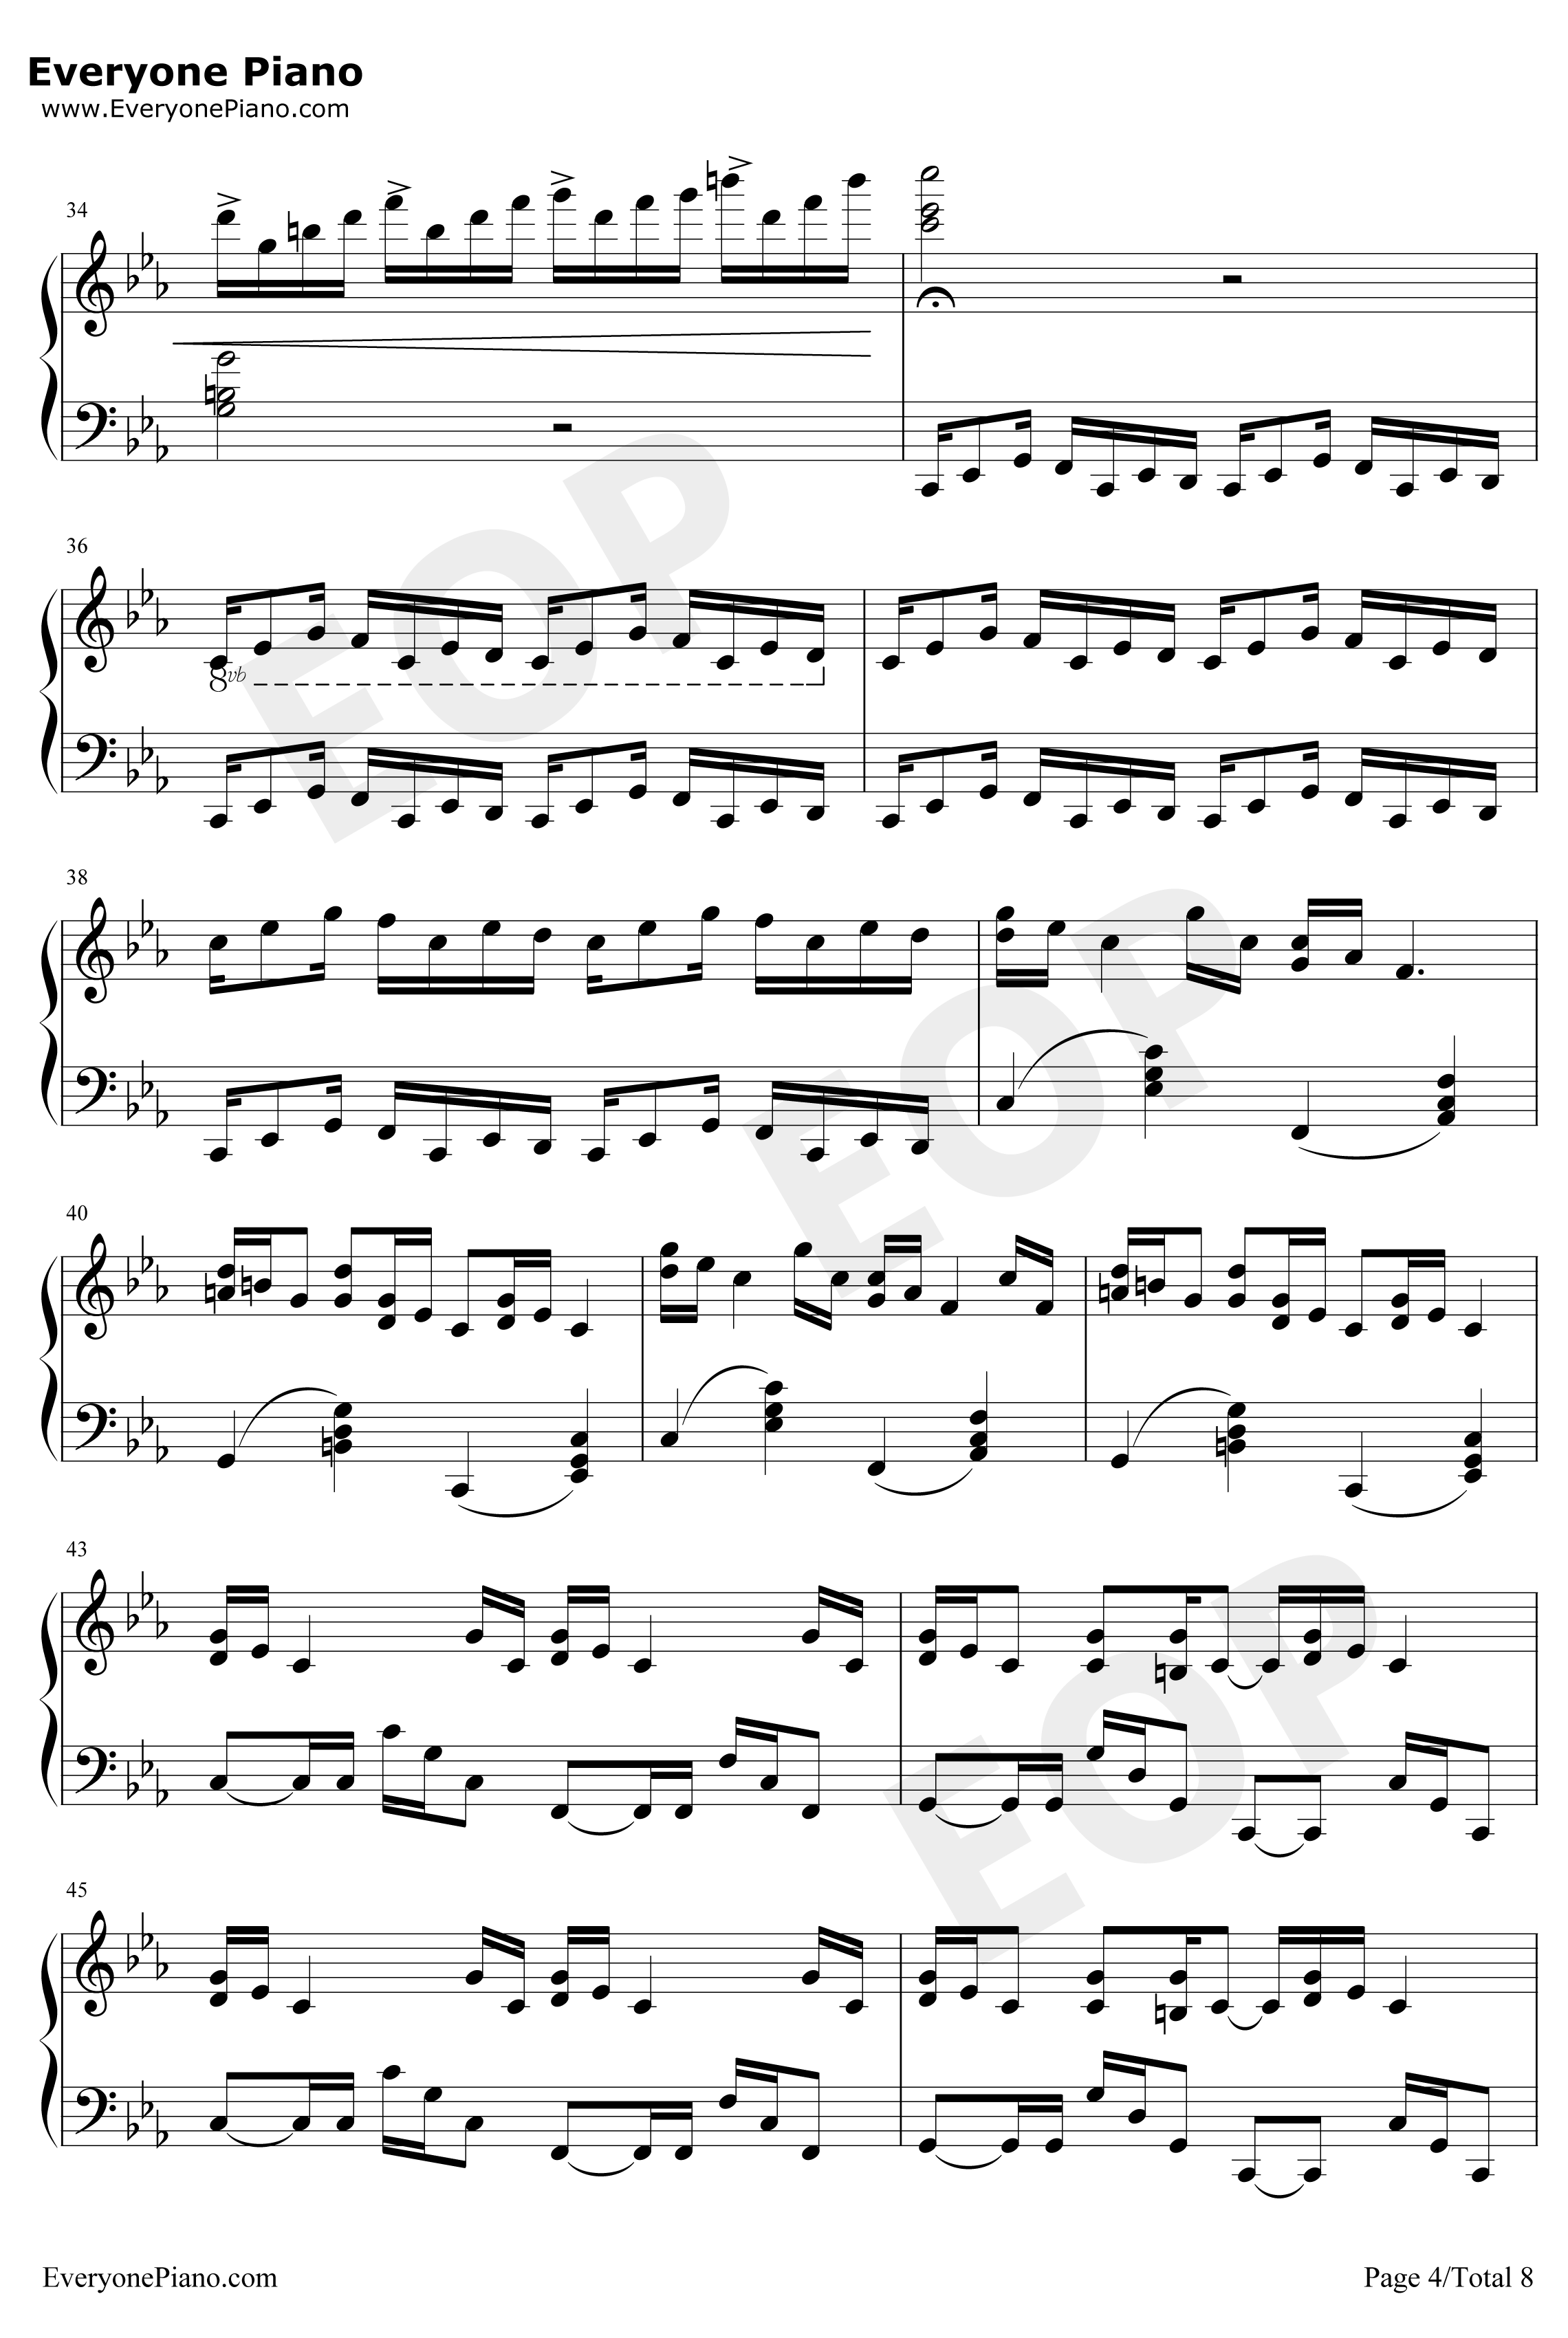 克罗地亚狂想曲钢琴谱-完美版-马克西姆4